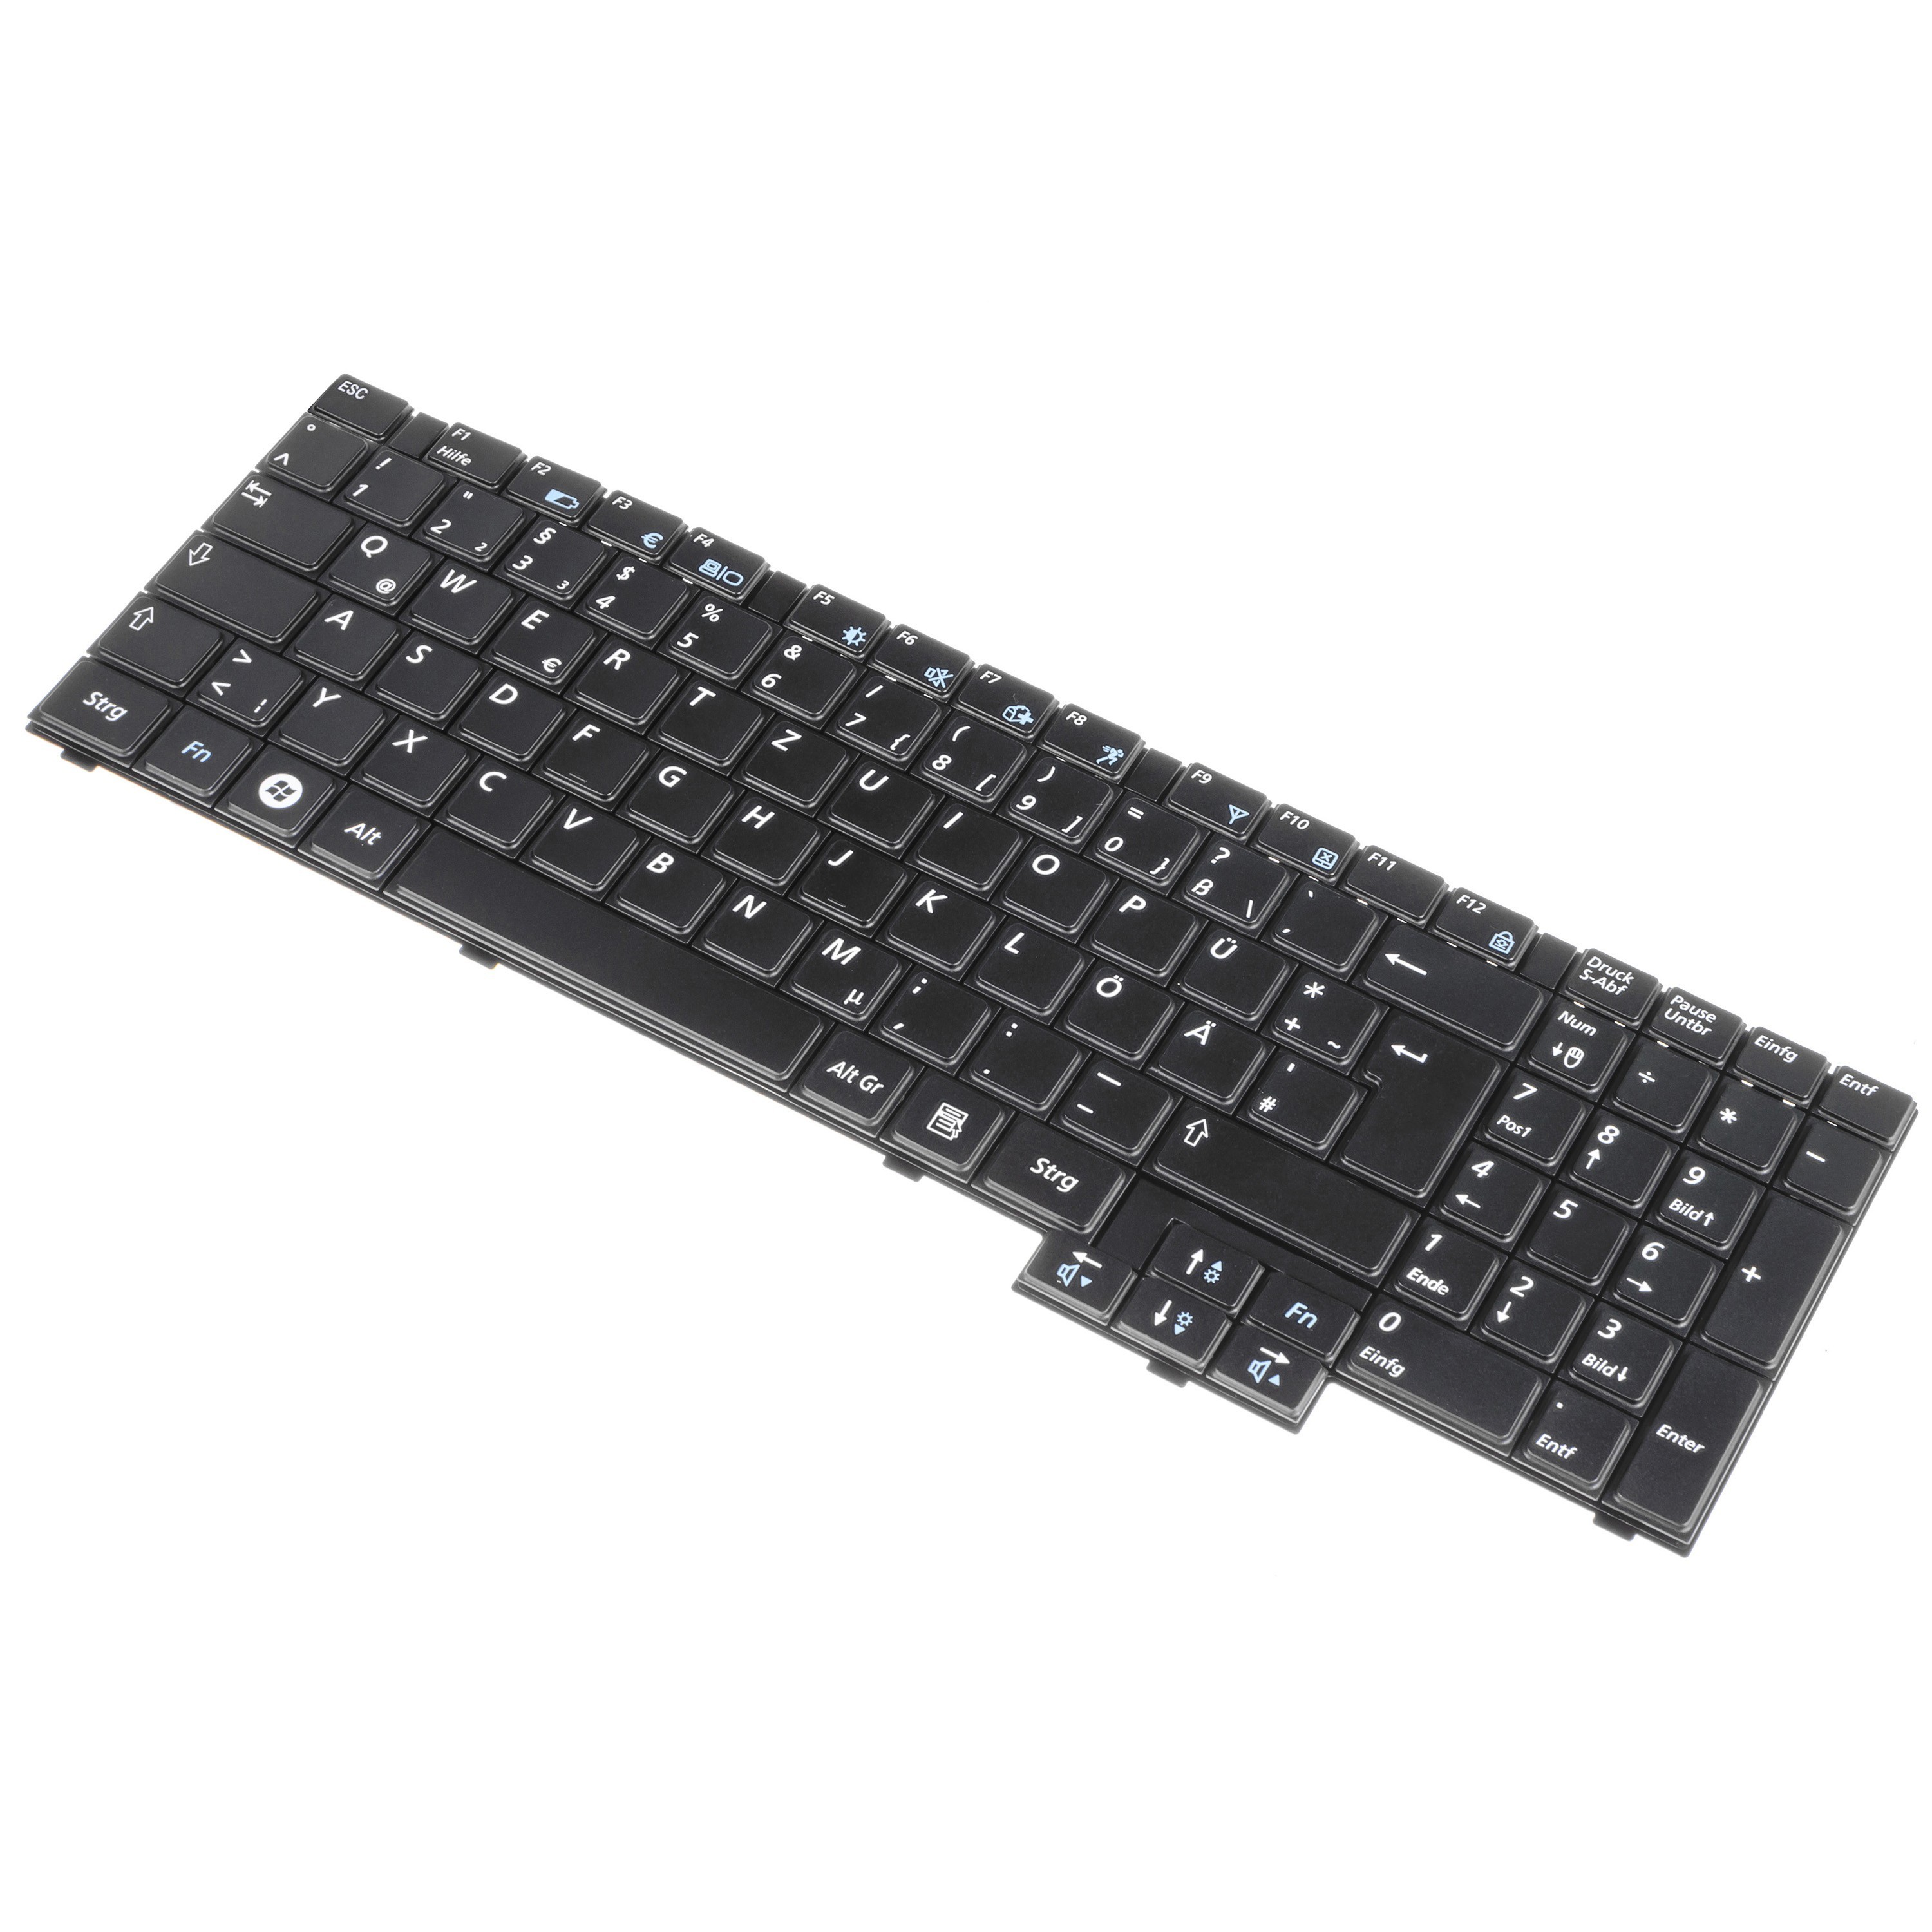 Green Cell German Keyboard for Laptop Samsung R519 R525 R530 R528 R538 R540 R610 R620 R719 RV508 RV510